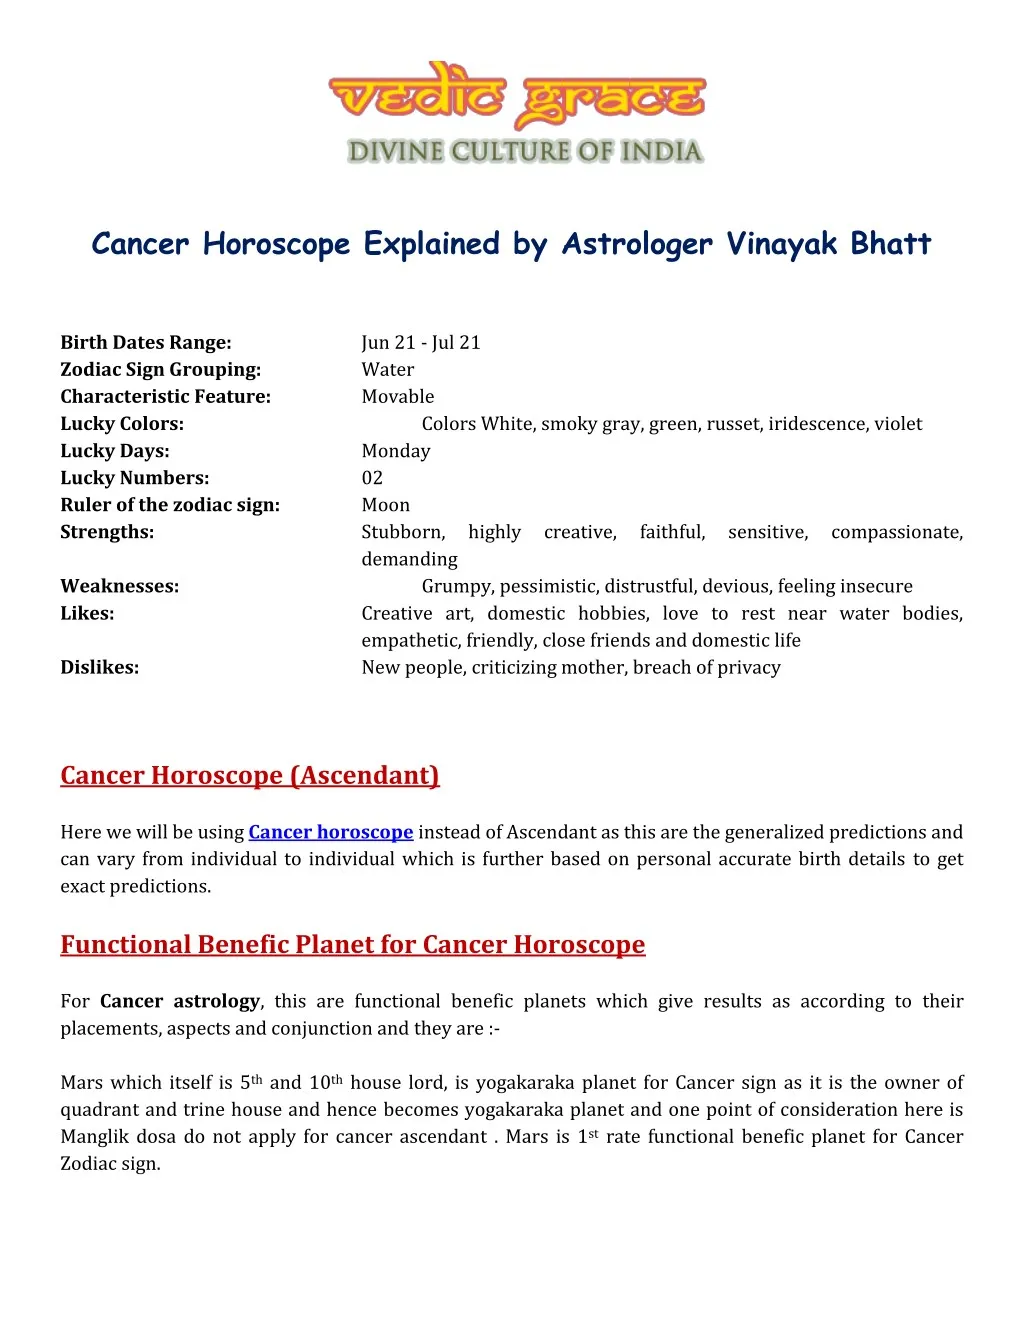 cancer horoscope explained by astrologer vinayak